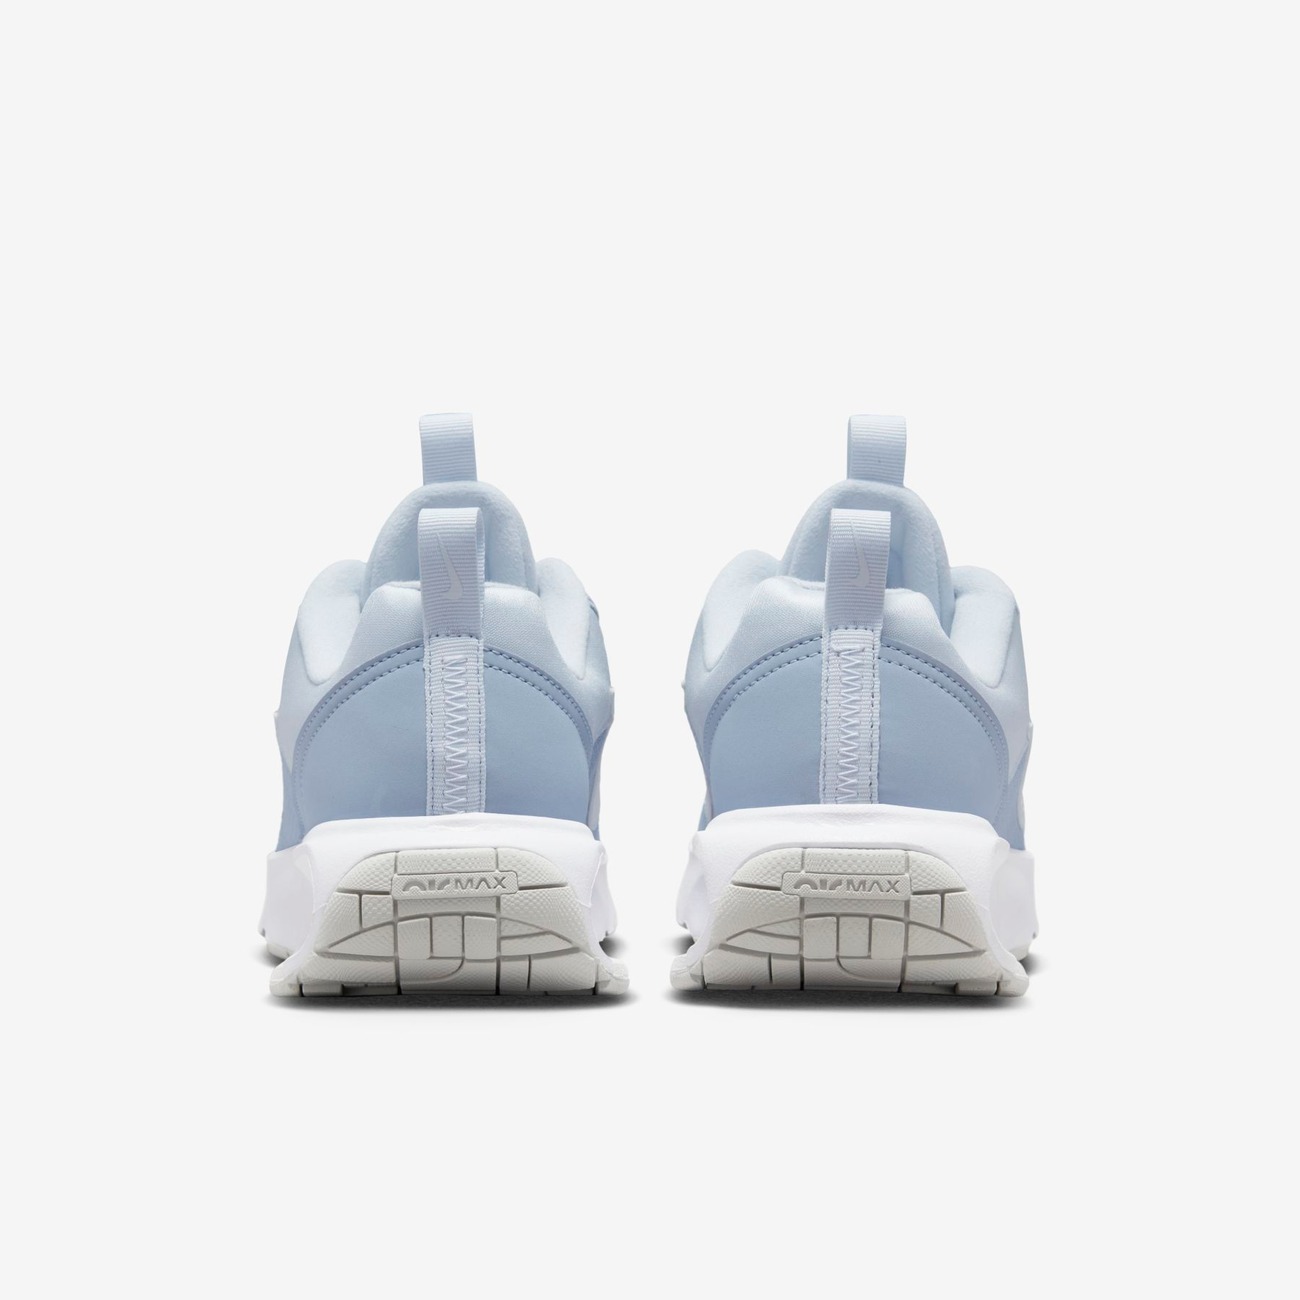 Tênis Nike Air Max Intrlk Lite Branco